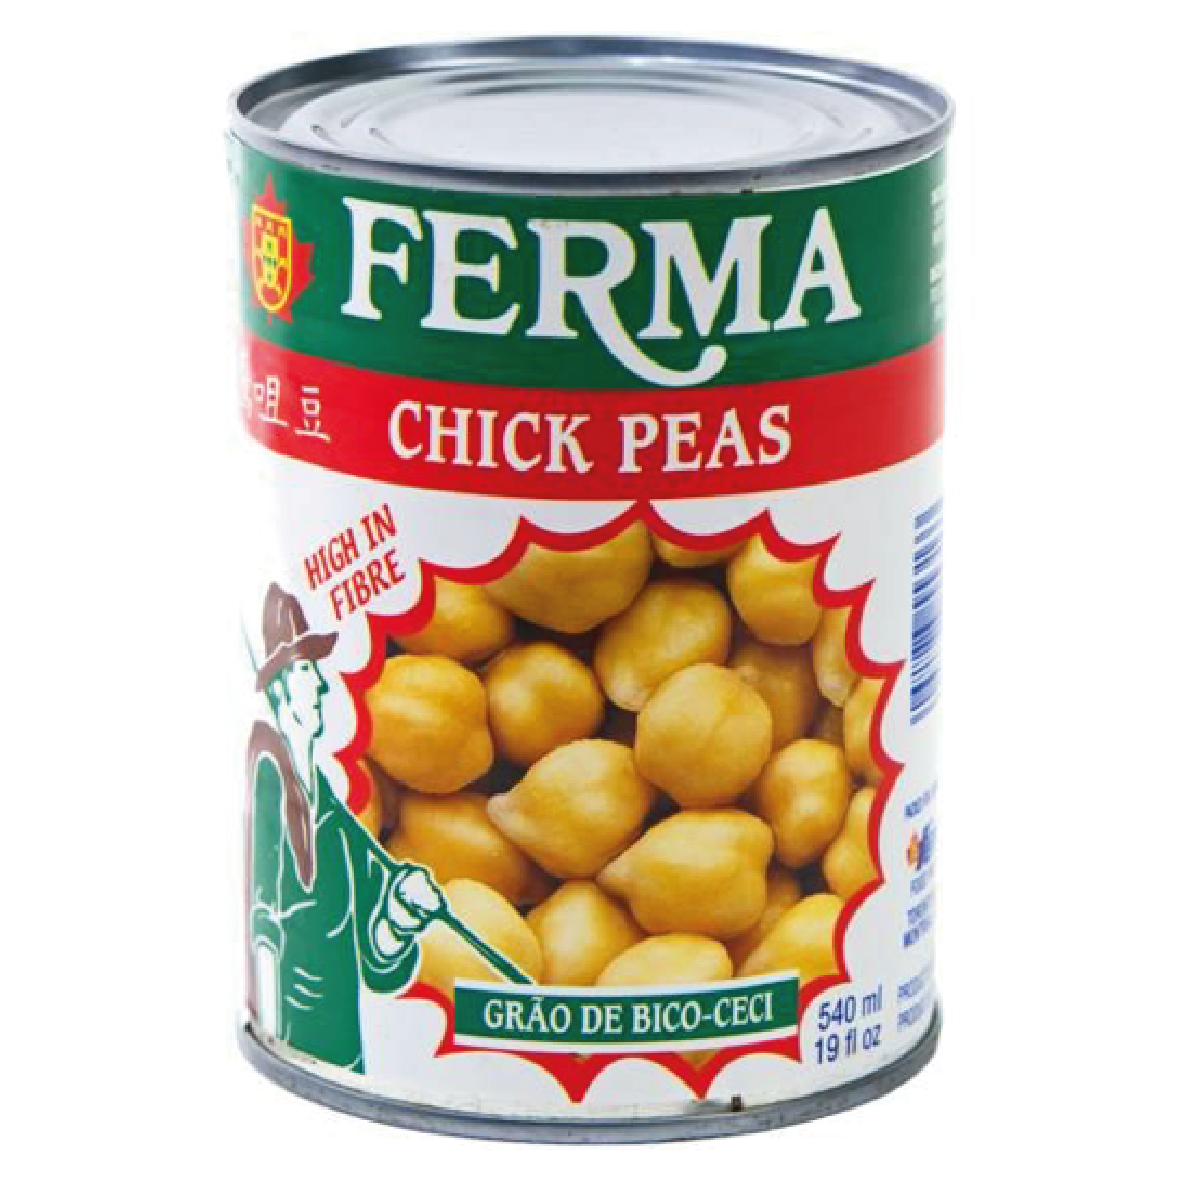 Ferma Chick Peas/Grão de Bico 540ml